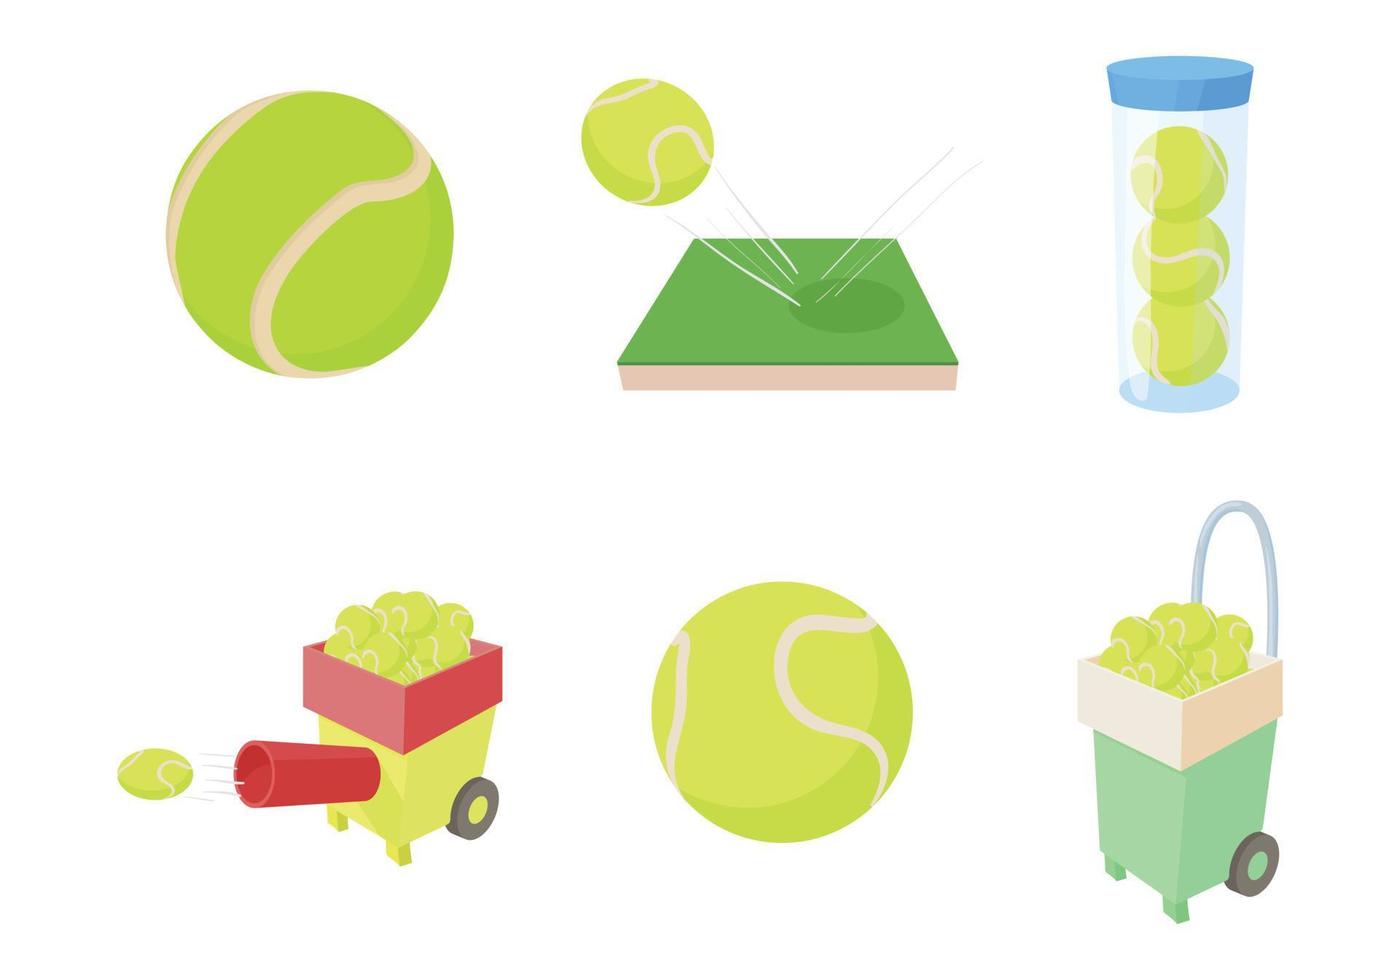 Tennis ball icon set, cartoon style vector